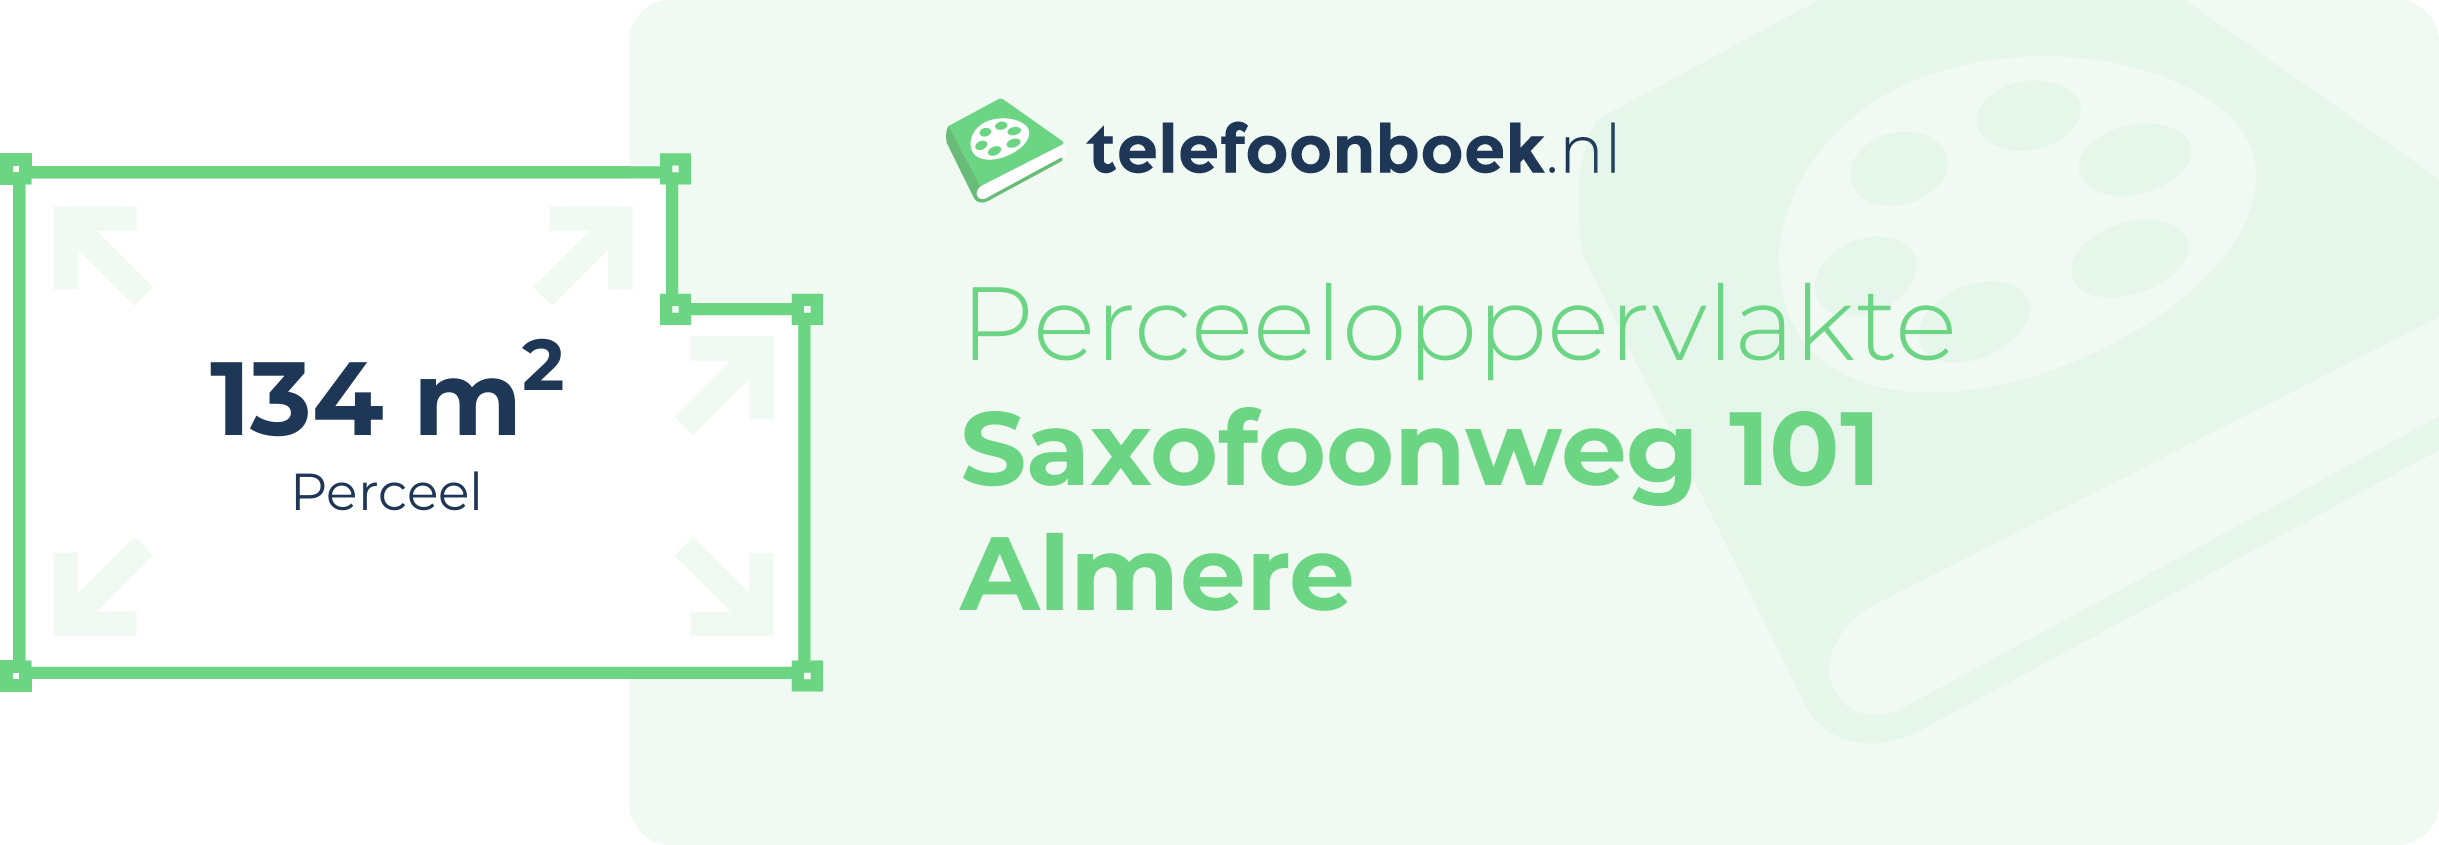 Perceeloppervlakte Saxofoonweg 101 Almere